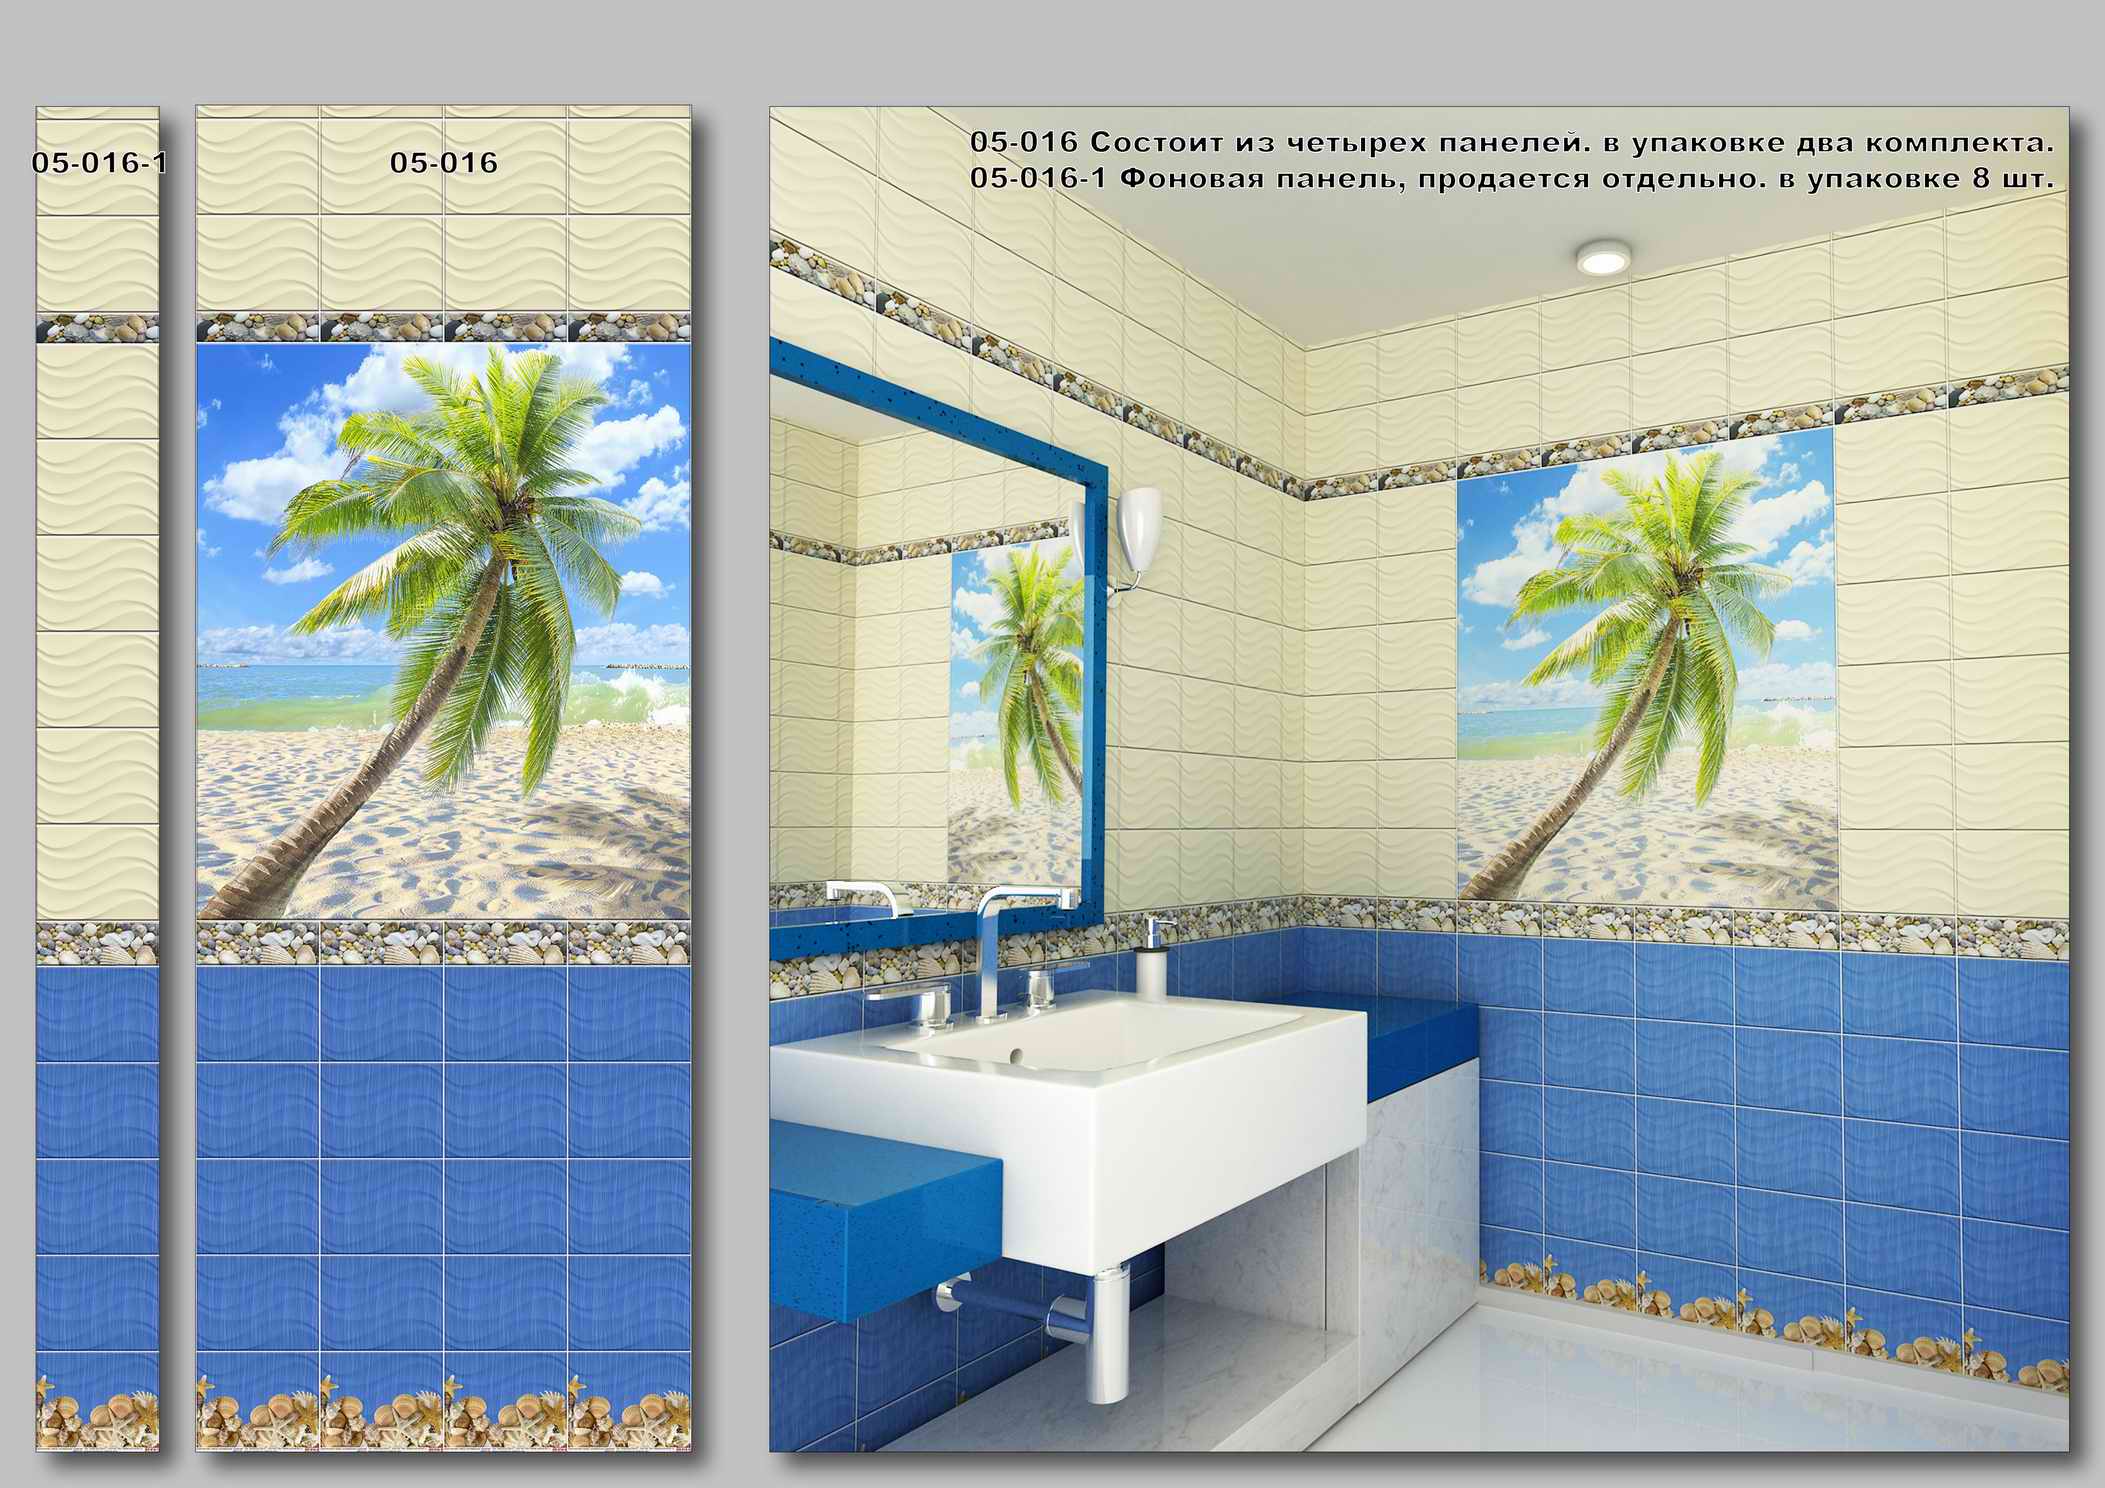 Панели в ванной купить в красноярске. Панели ПВХ Осиана пальмы. Панель Кронапласт unique песчаный пляж (0,25м*2,7м*8мм). Панель ПВХ 250*2700*9мм (8шт=5,4м2) (01-044л Ротонда). Пластиковые панно для ванной.